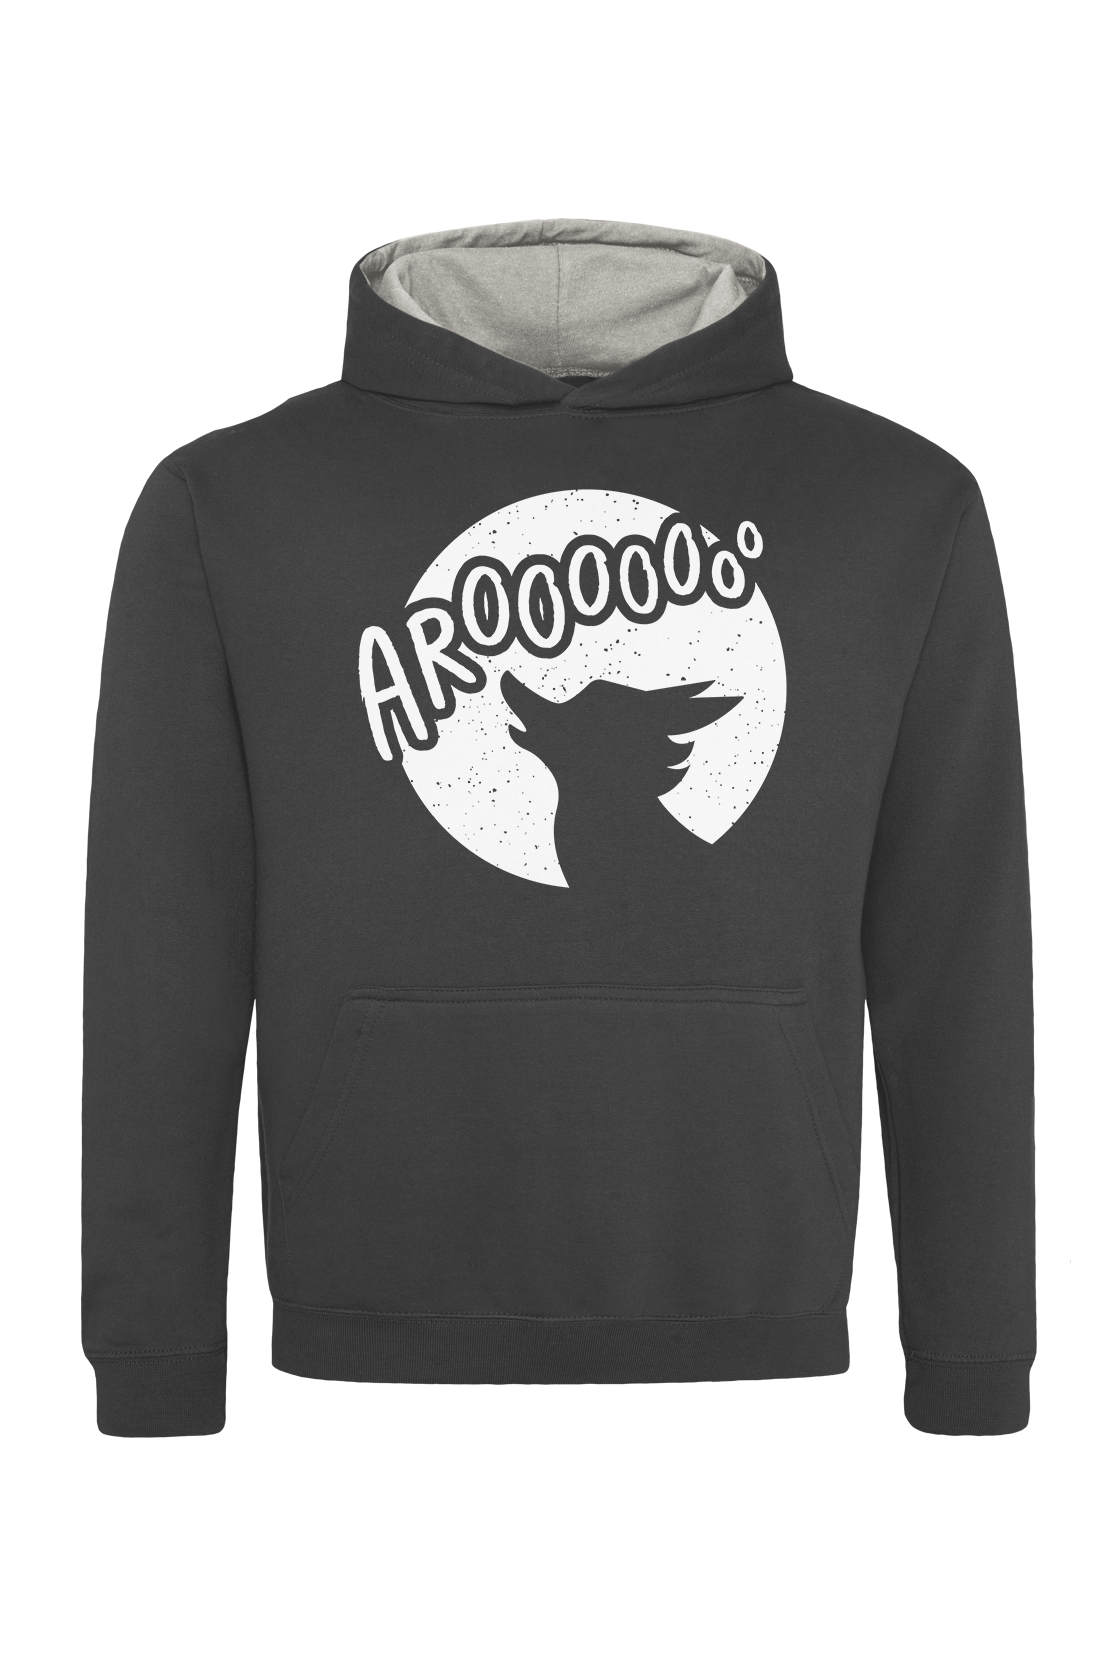 The Pack Aroo kids hoodie